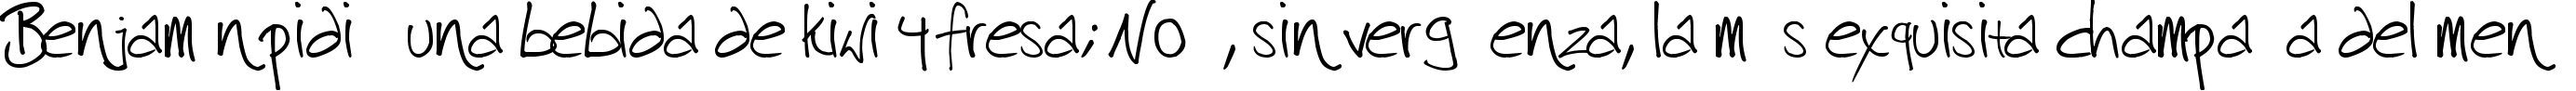 Пример написания шрифтом harrison текста на испанском